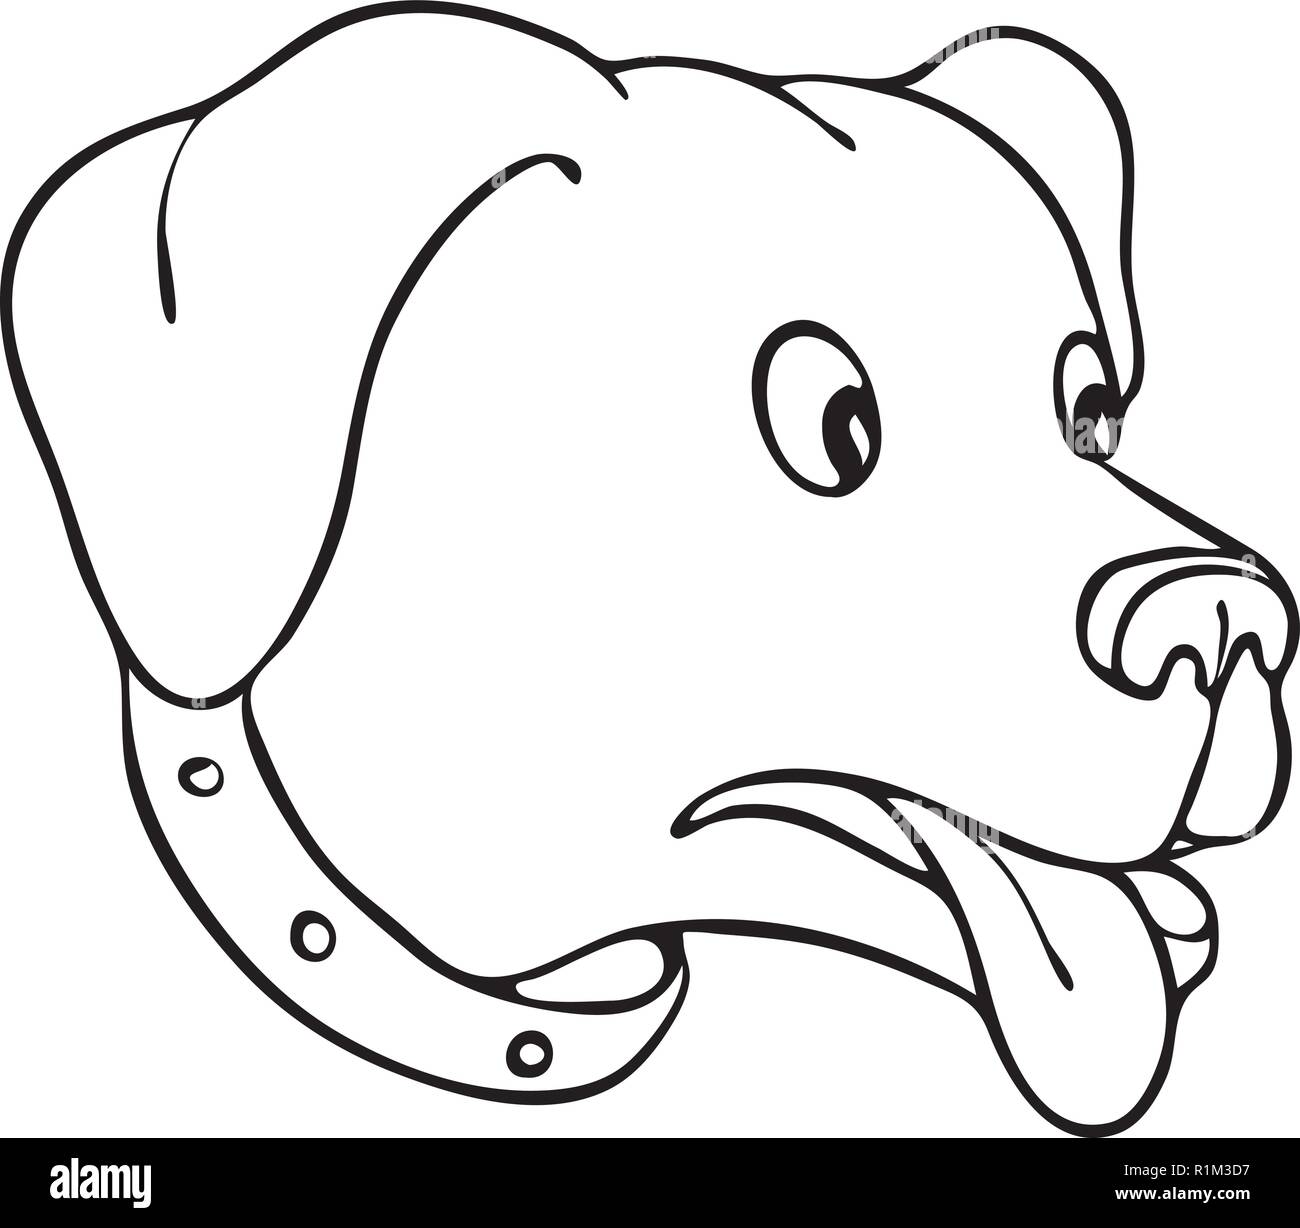 Croquis dessin illustration de style d'un Labrador Retriever, Labrador noir ou retriever-chien, avec des yeux surpris et popping out en noir et whi Illustration de Vecteur